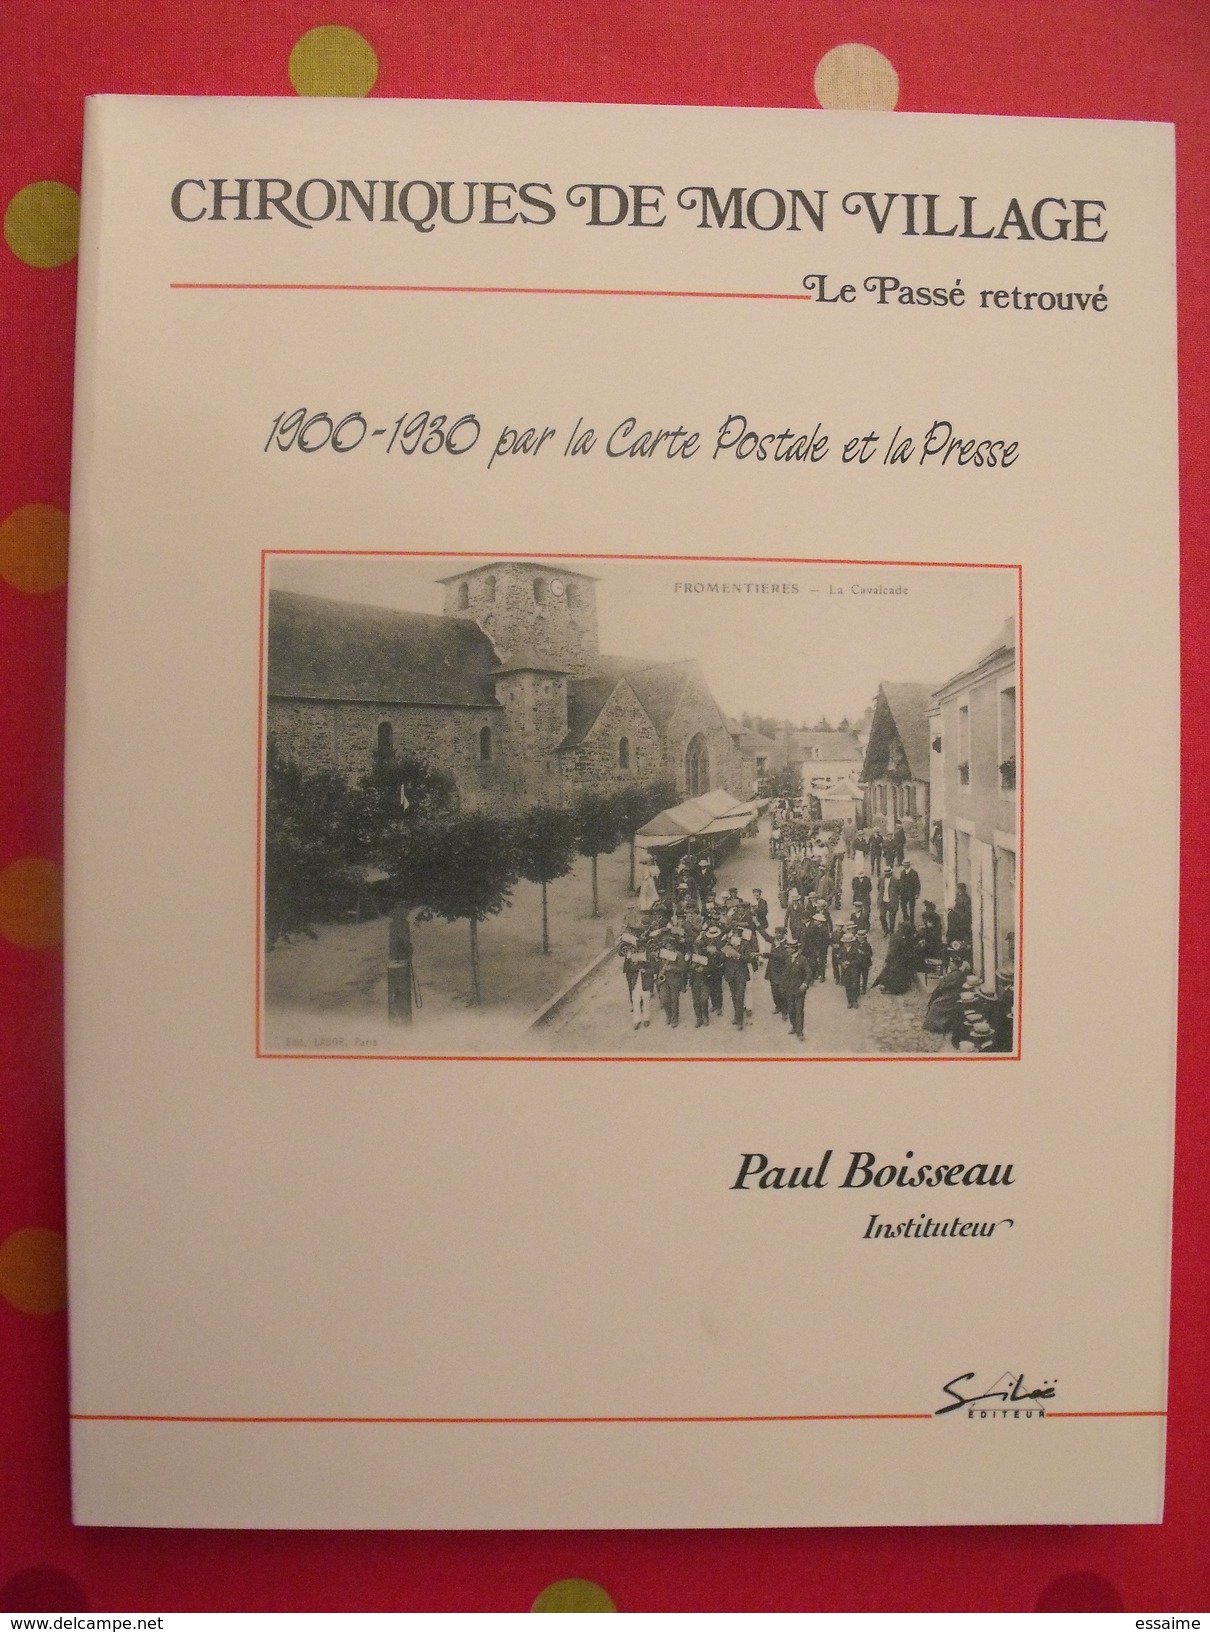 Chroniques De Mon Village : Fromentières. Mayenne. Paul Boisseau, Instituteur. éditions Siloë 1987 Laval - Pays De Loire